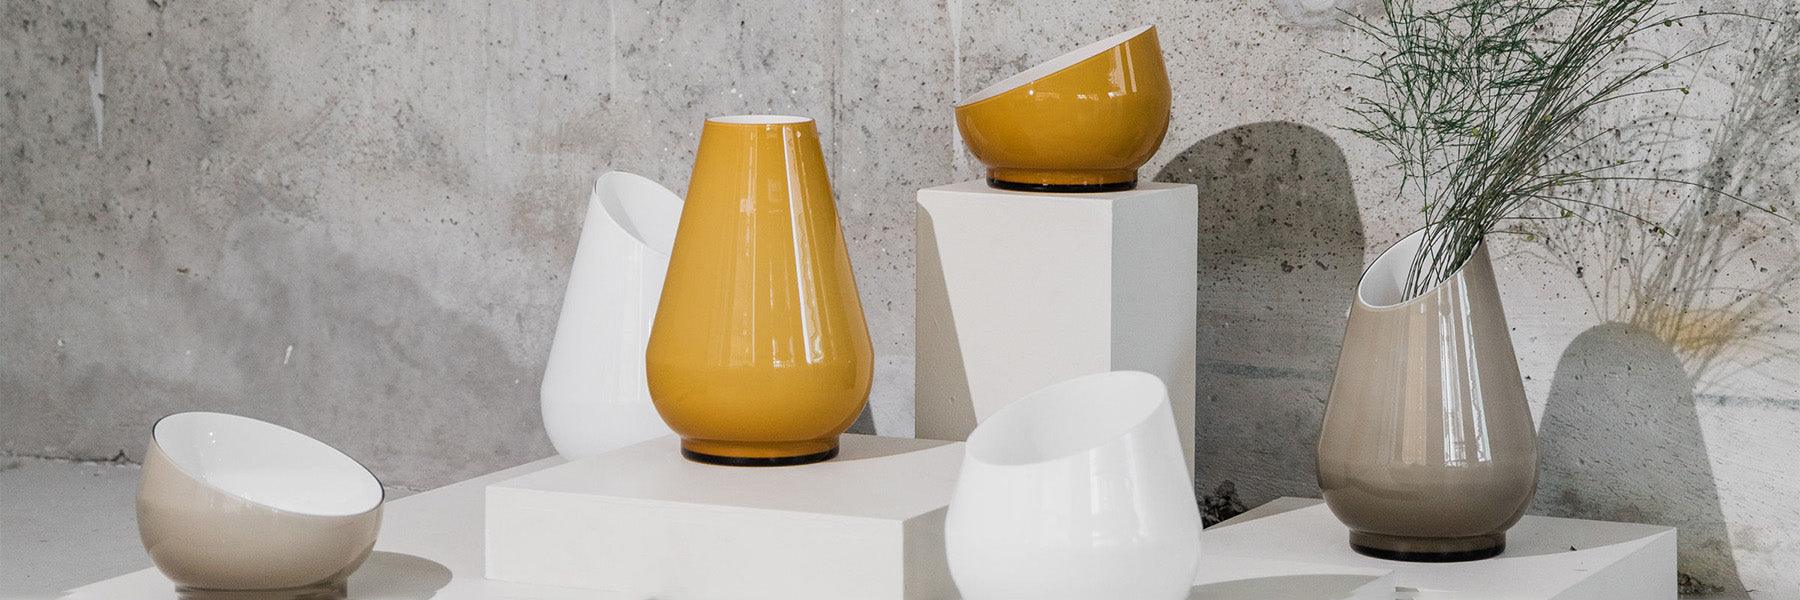 Glass vases and bowls - FÓLK Reykjavik